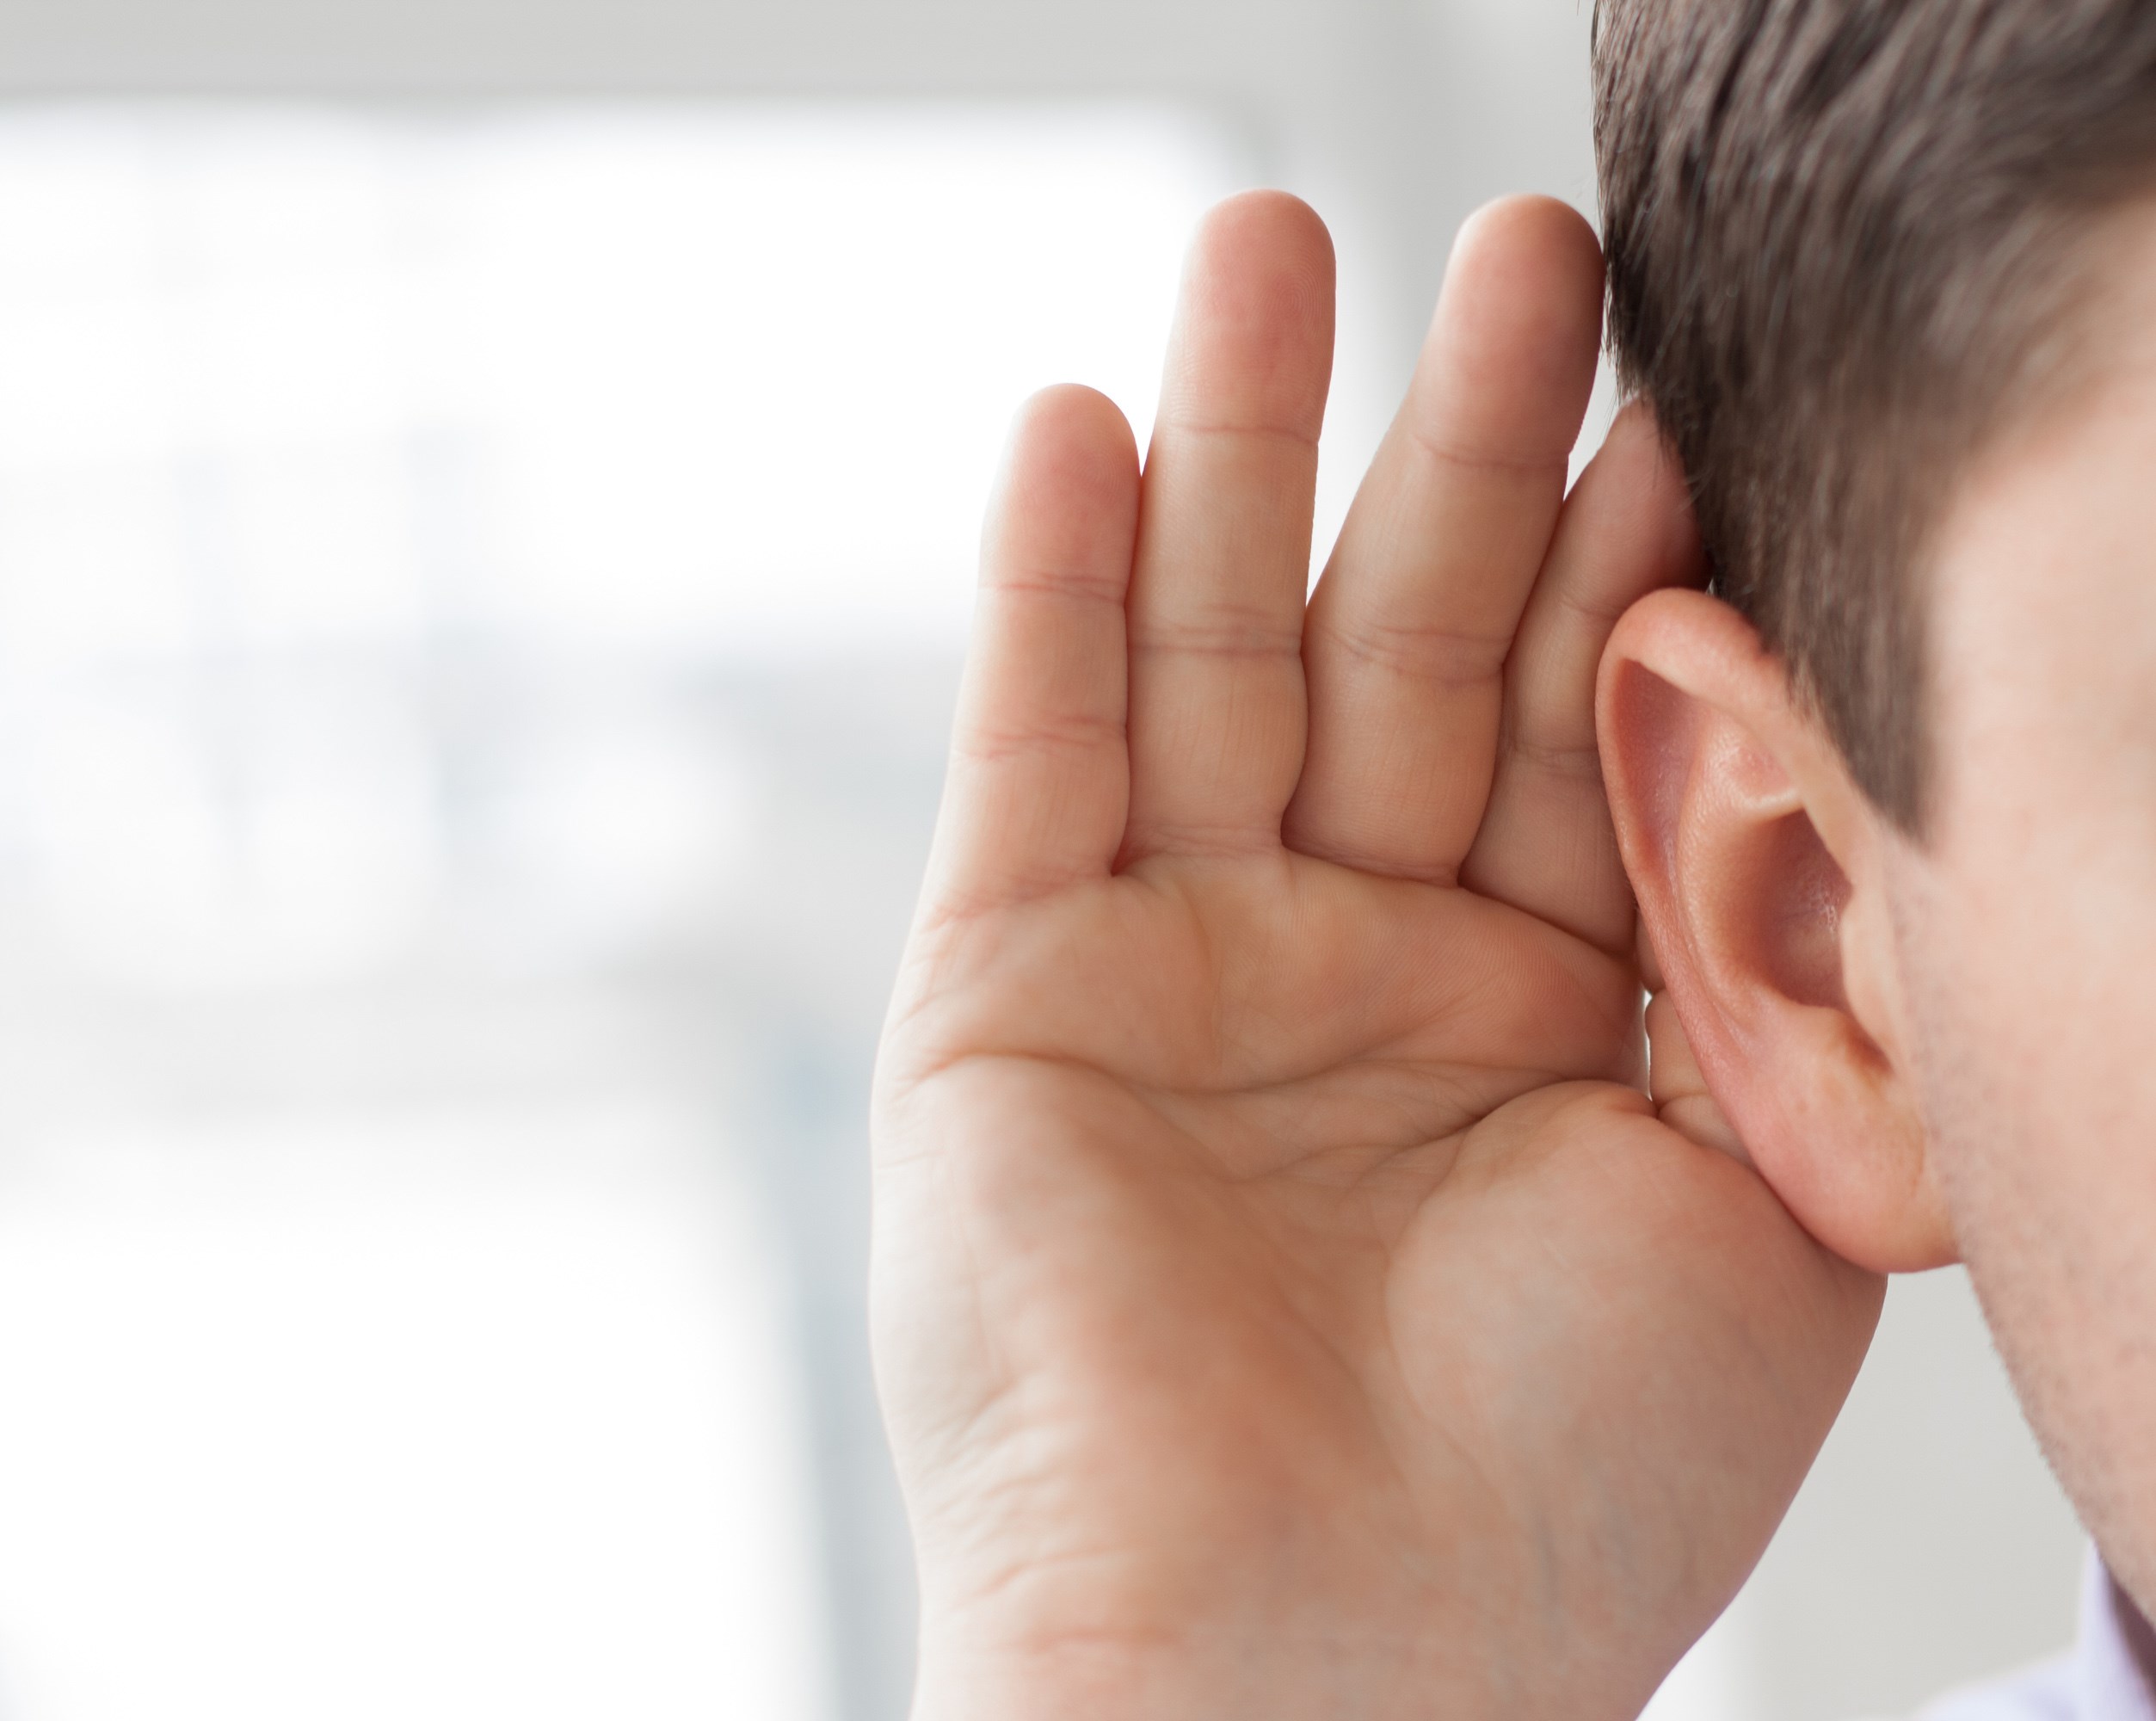 Nærbillede af øre. Personen holder sin hånd bag øret for at lytte bedre.